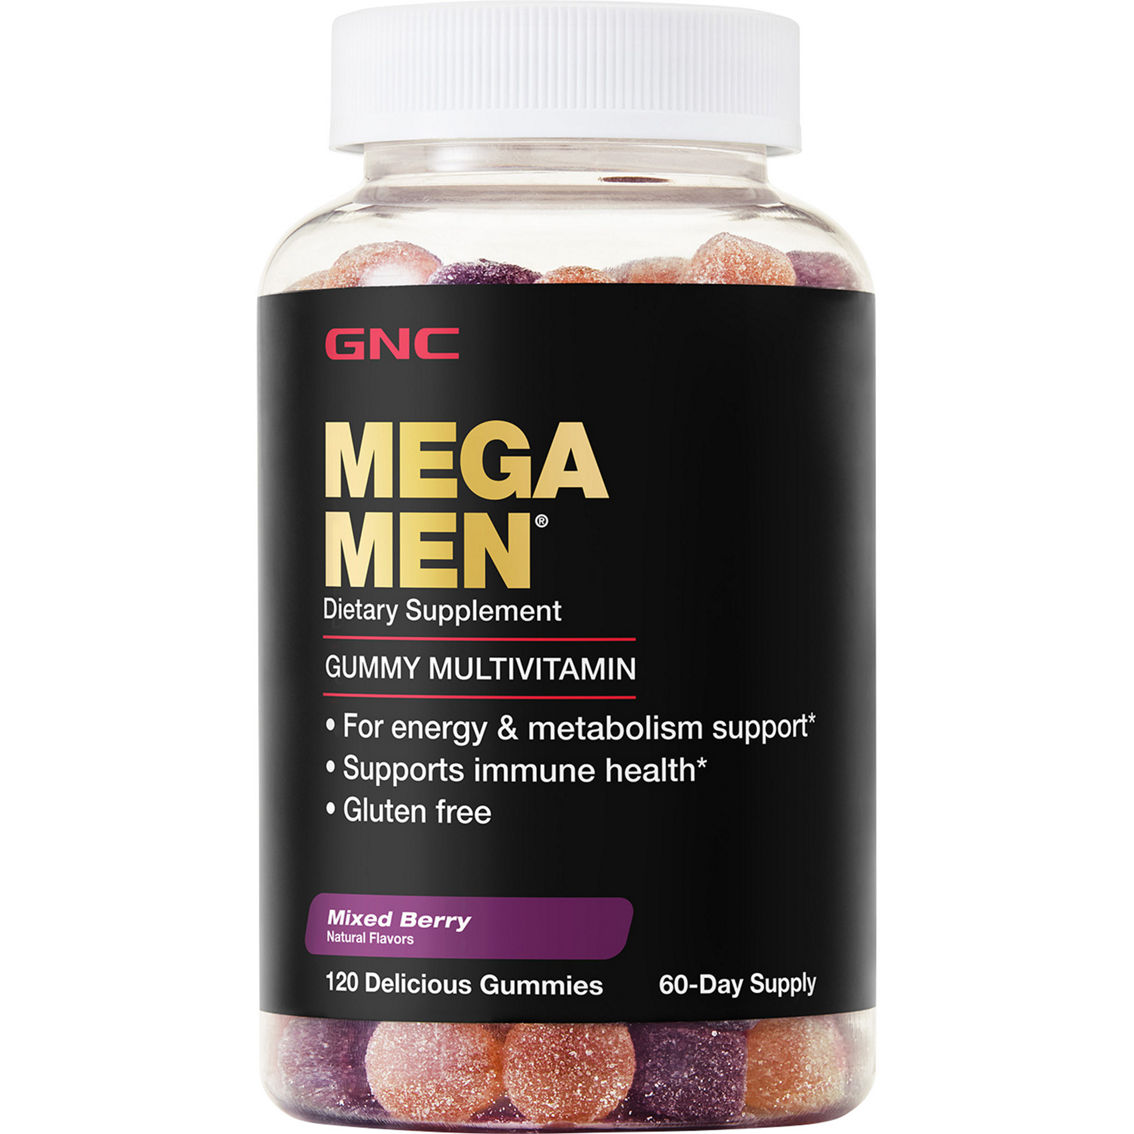 GNC Mega Men Gummy Multivitamin 120 ct. - Image 1 of 2